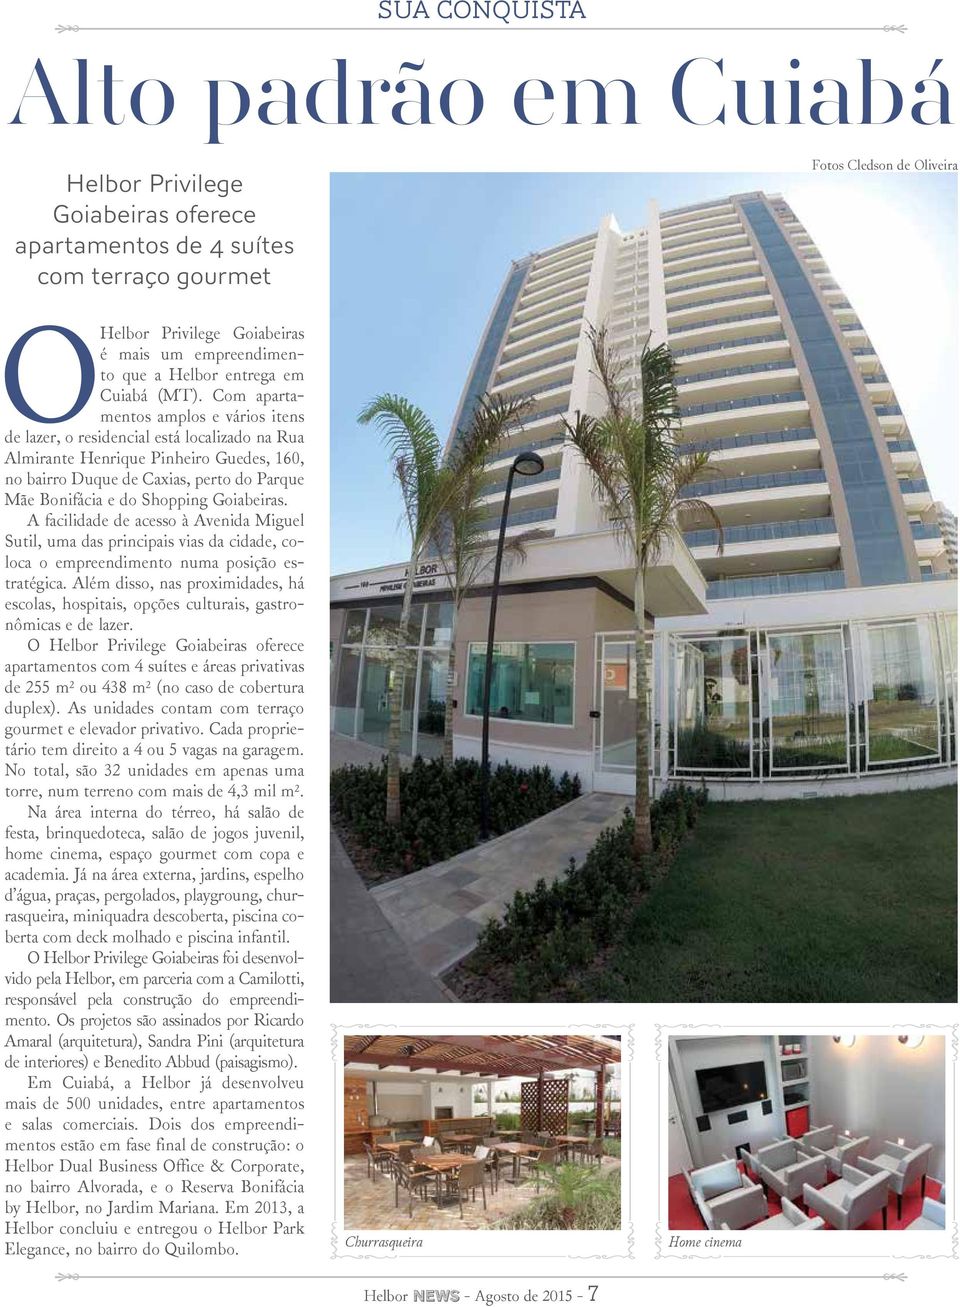 Com apartamentos amplos e vários itens de lazer, o residencial está localizado na Rua Almirante Henrique Pinheiro Guedes, 160, no bairro Duque de Caxias, perto do Parque Mãe Bonifácia e do Shopping